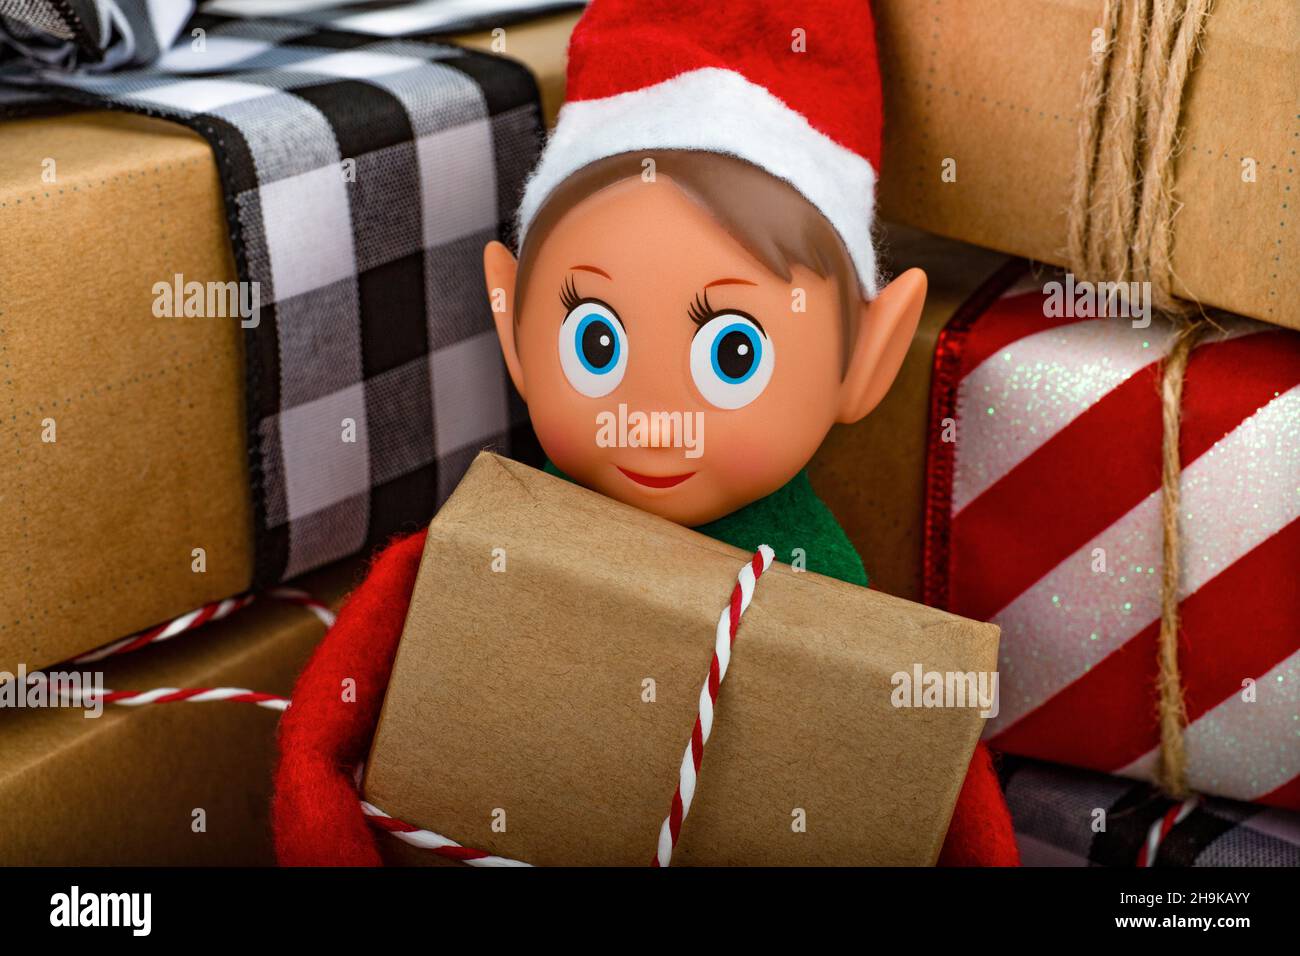 Gros plan d'un Elf de Noël assis dans une pile de boîtes-cadeaux esprit de Noël, la tradition familiale de Noël. Banque D'Images